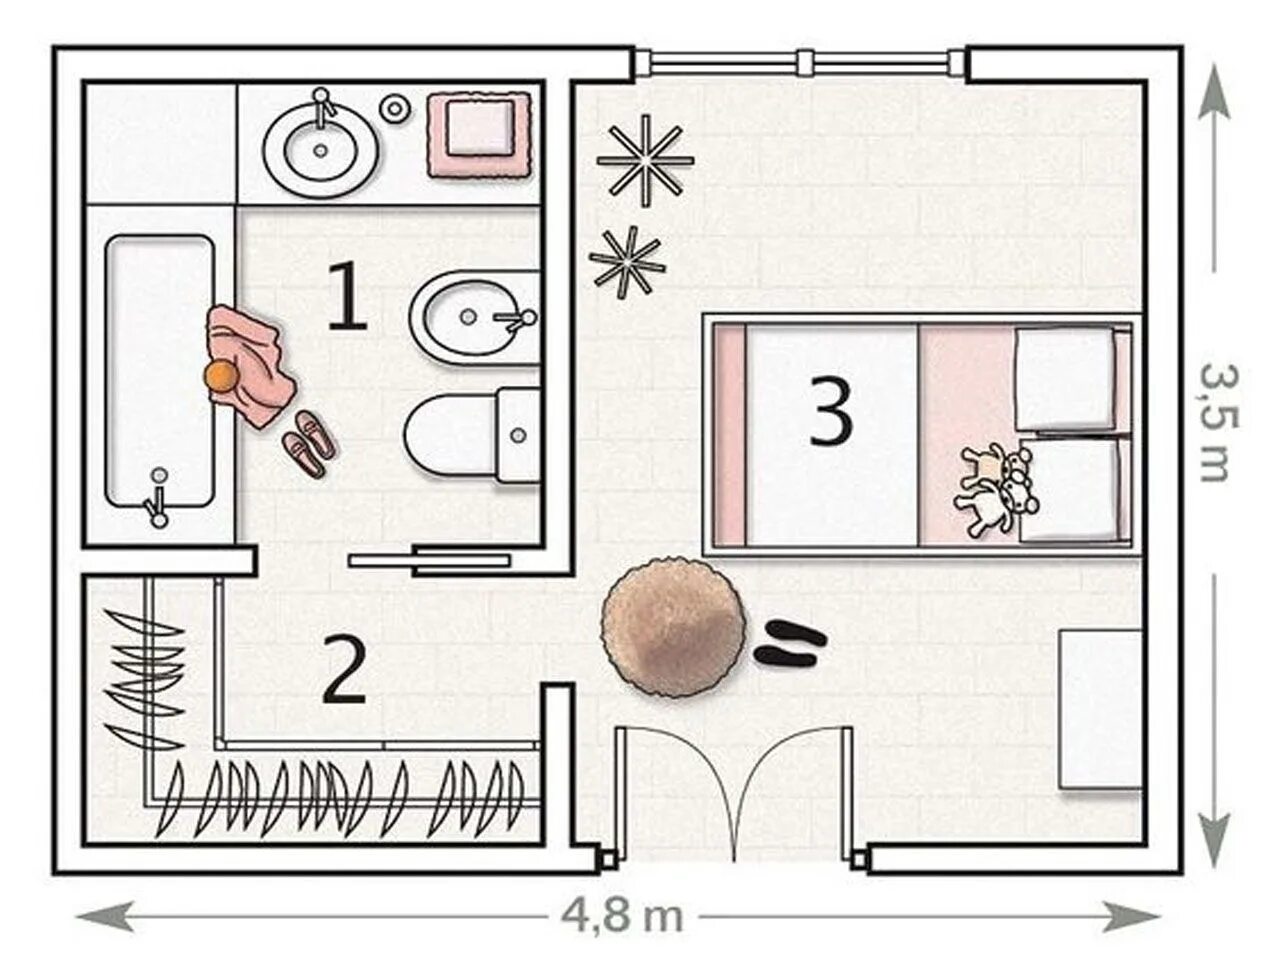 Планировка комнаты чертеж. Схематичный план комнаты. Планировка спальни с гардеробом и санузлом. Схема квартиры. Сверху девять